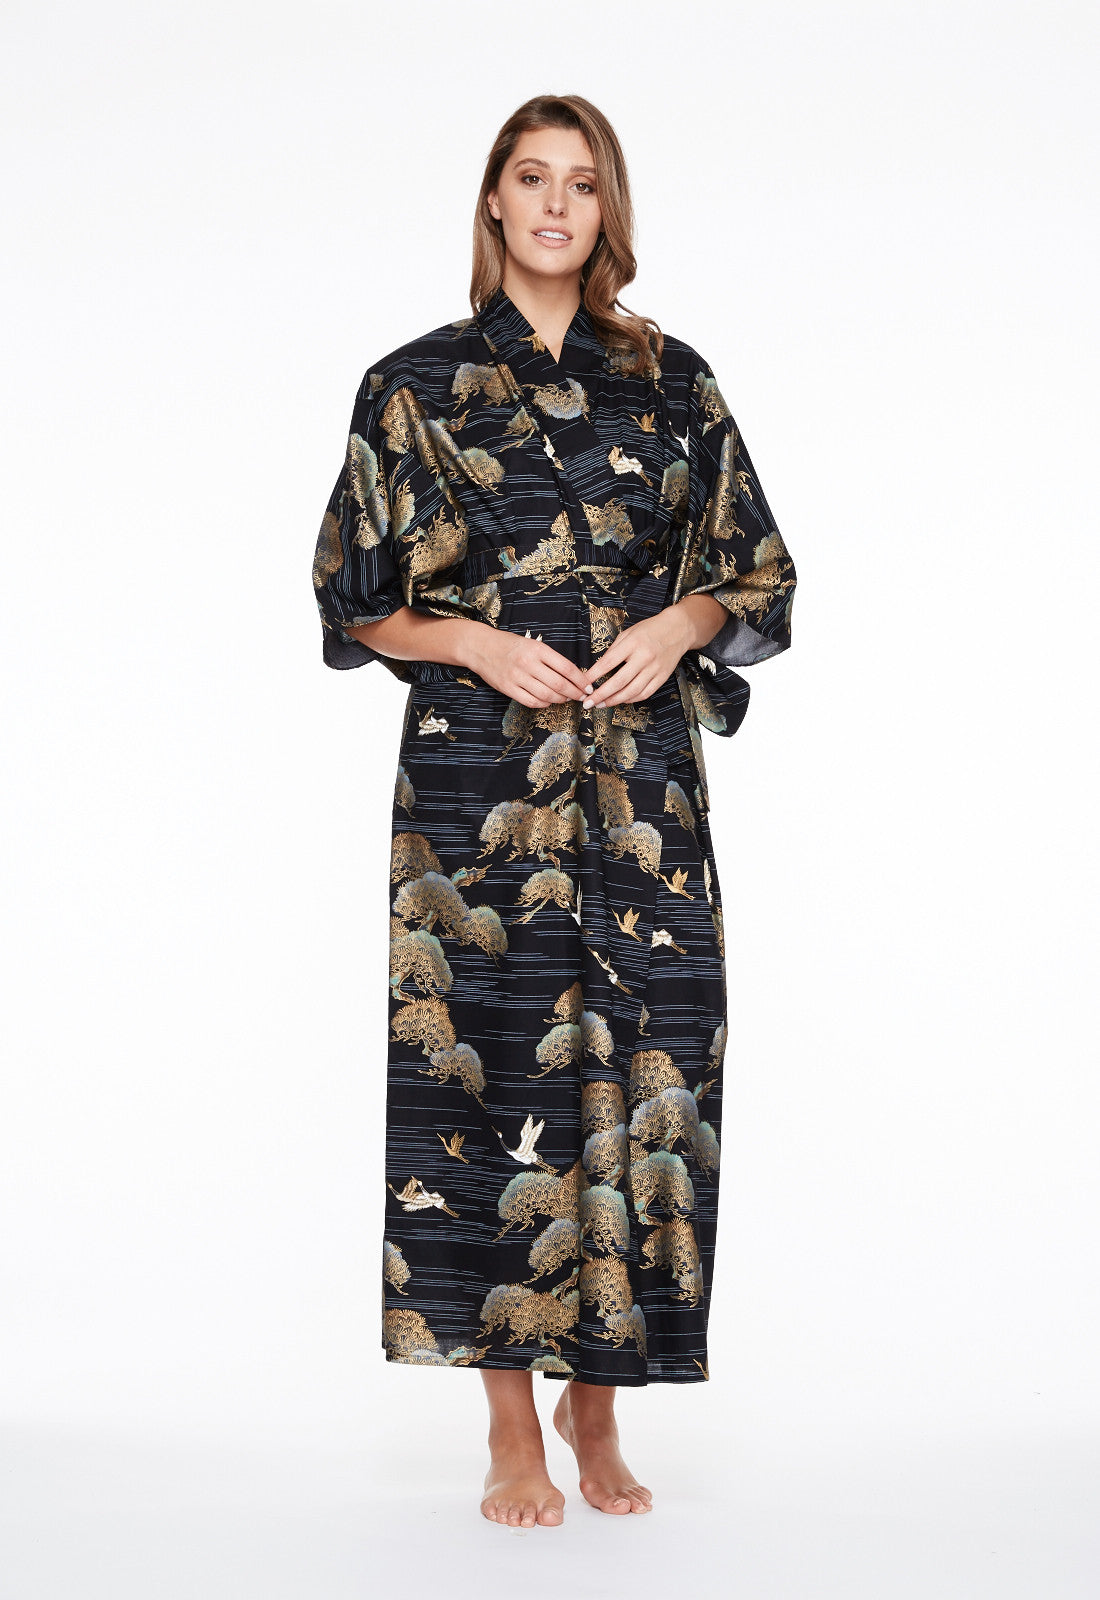 Plus Size Kimono Robe Plus Size Cotton Kimono Plus Size Kimono Australia Beautiful Robes 